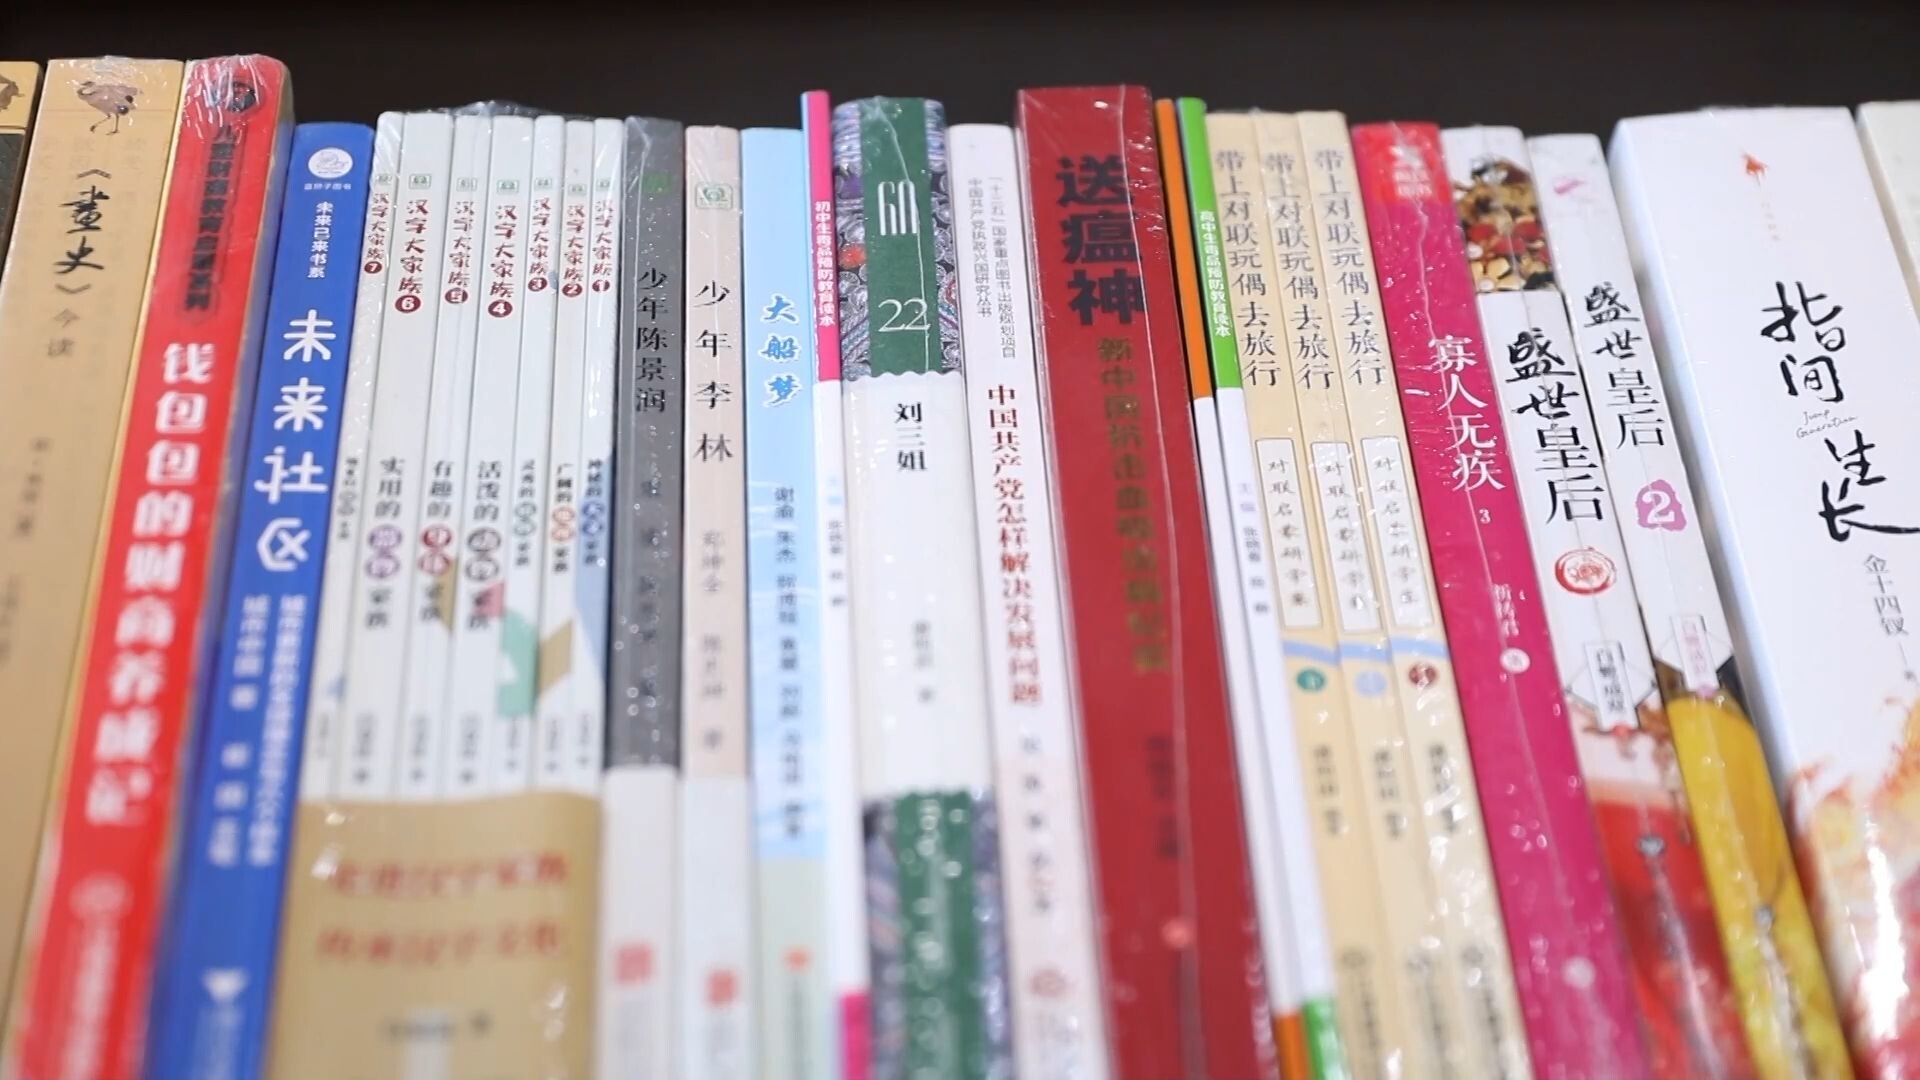 นิทรรศการ 'หนังสือจีน-เอเชียตะวันออกเฉียงใต้' ครั้งที่ 6 หนุนร่วมมือ-เจรจาลิขสิทธิ์